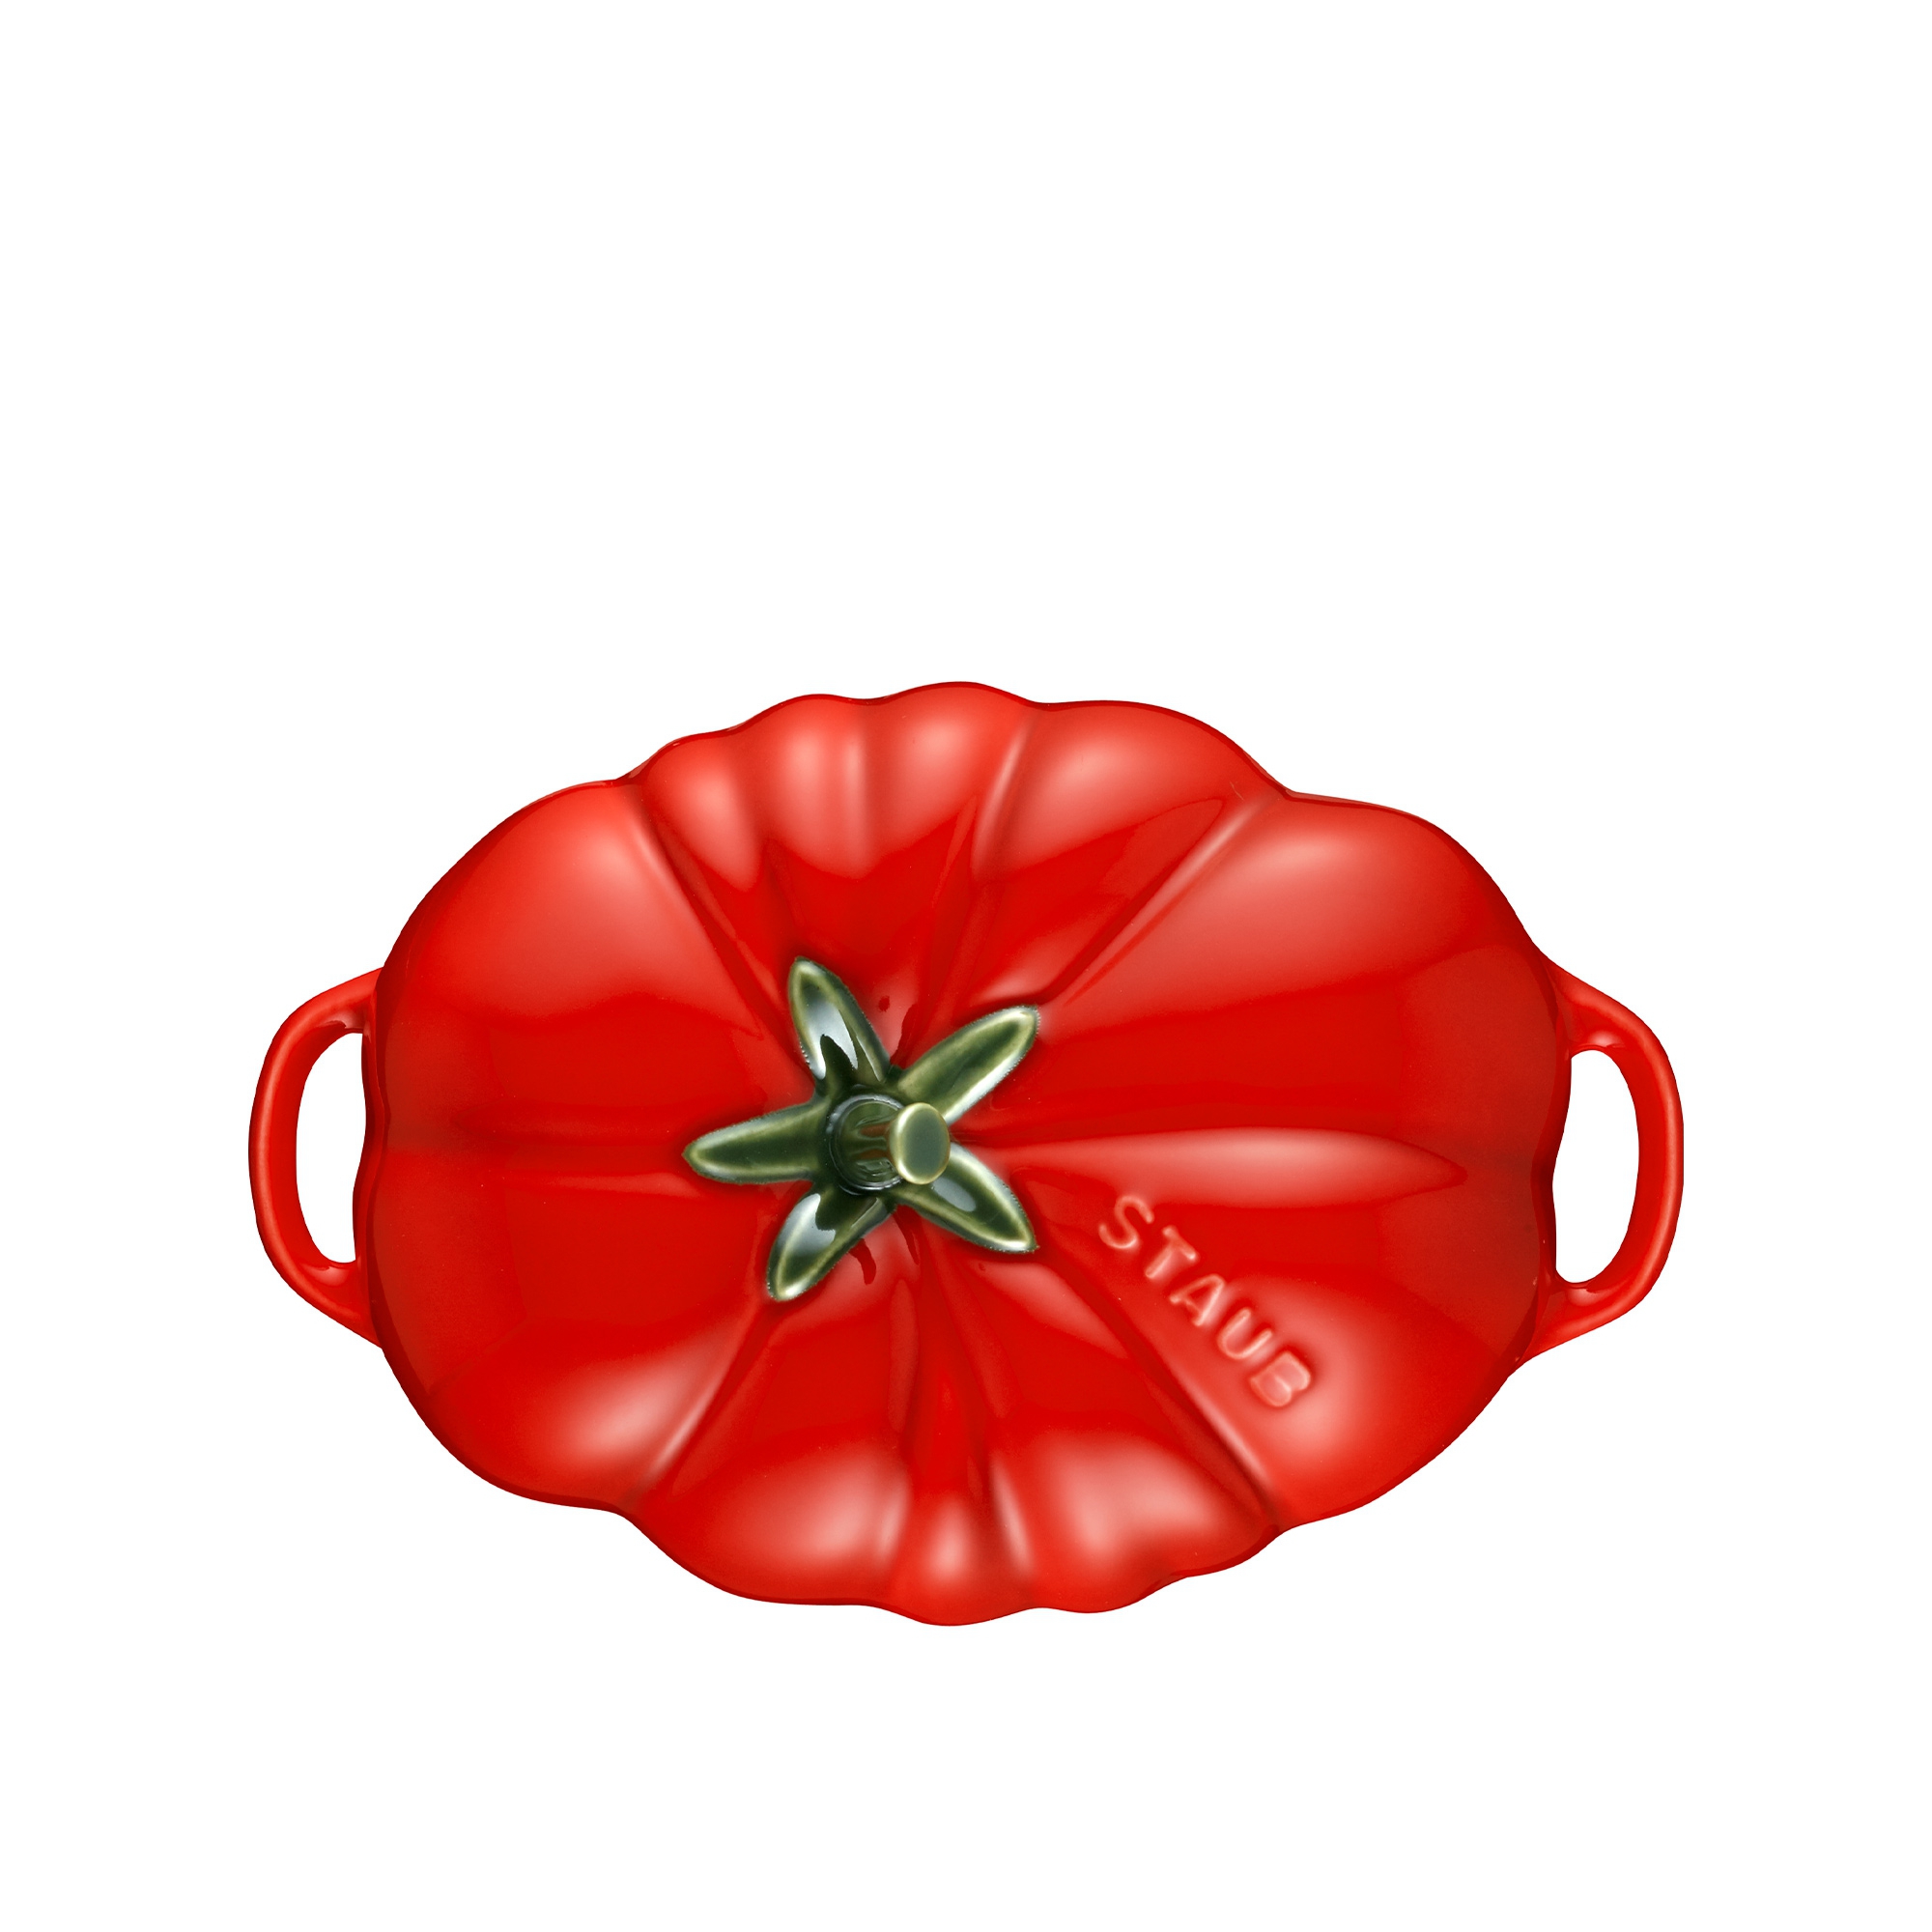 Staub - Ceramique Cocotte Tomate - 16 cm - kirschrot